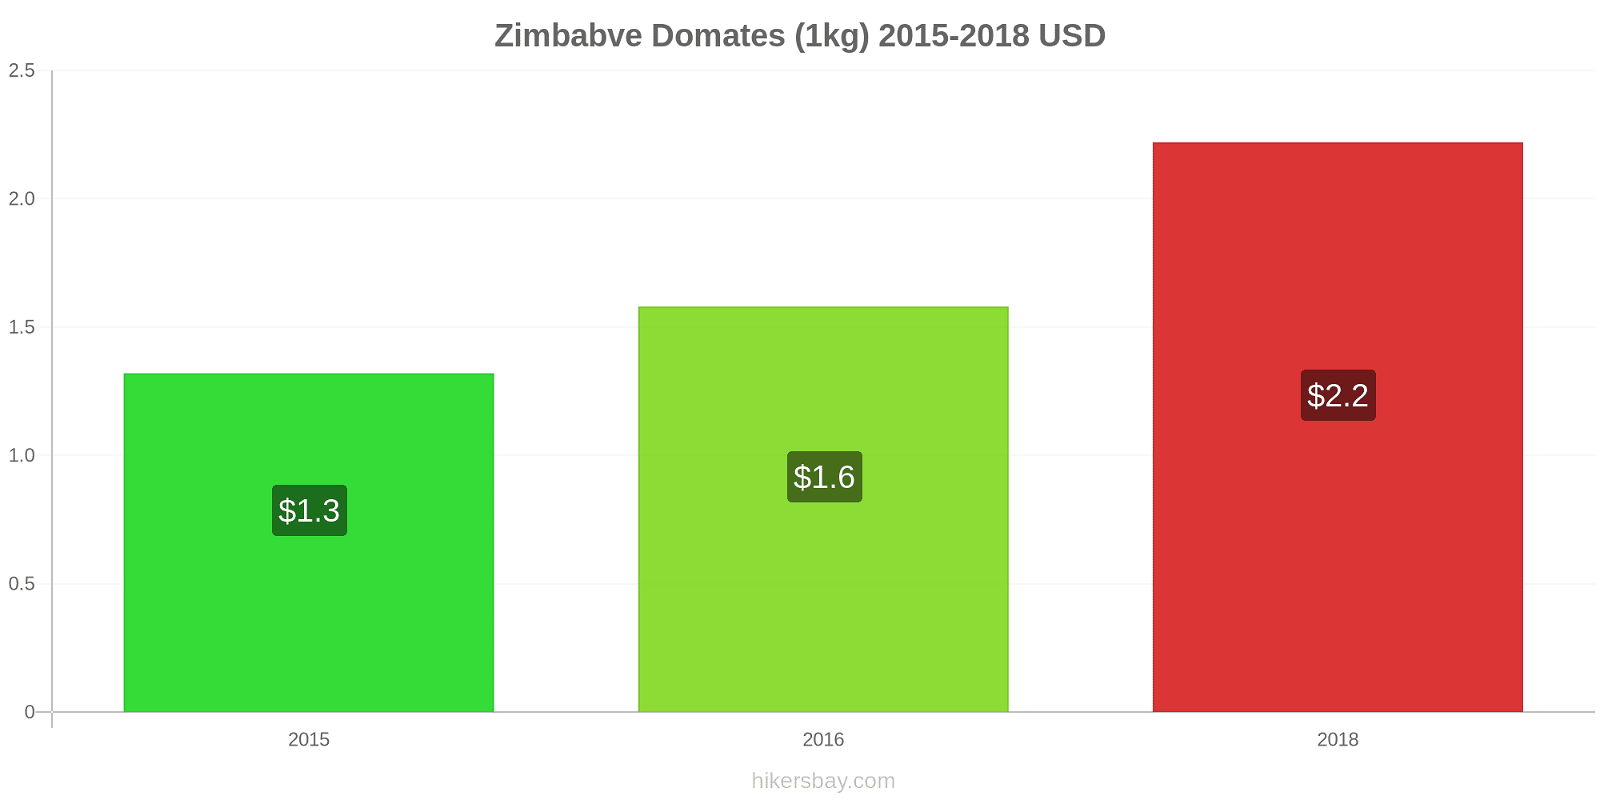 Zimbabve fiyat değişiklikleri Domates (1kg) hikersbay.com